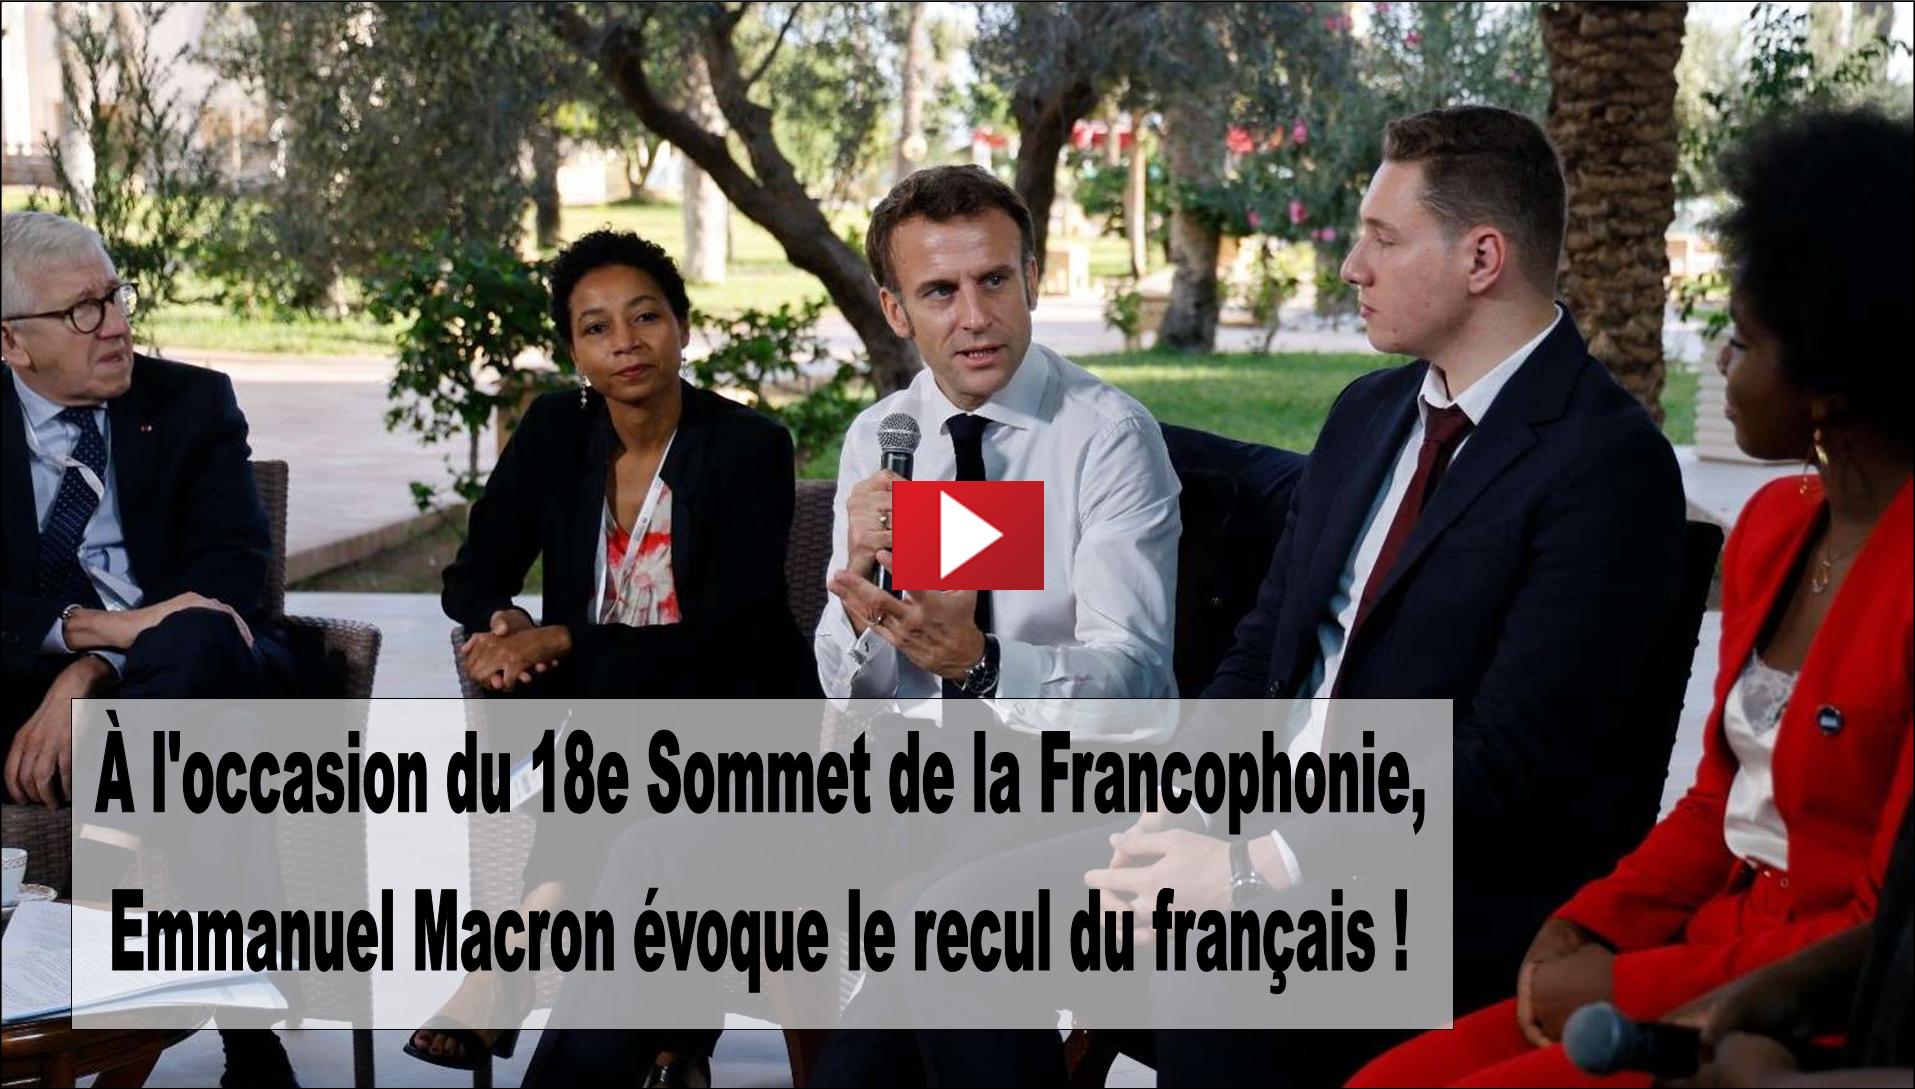 Au 18e Sommet de la Francophonie Emmanuel Macron voque le recul du franais